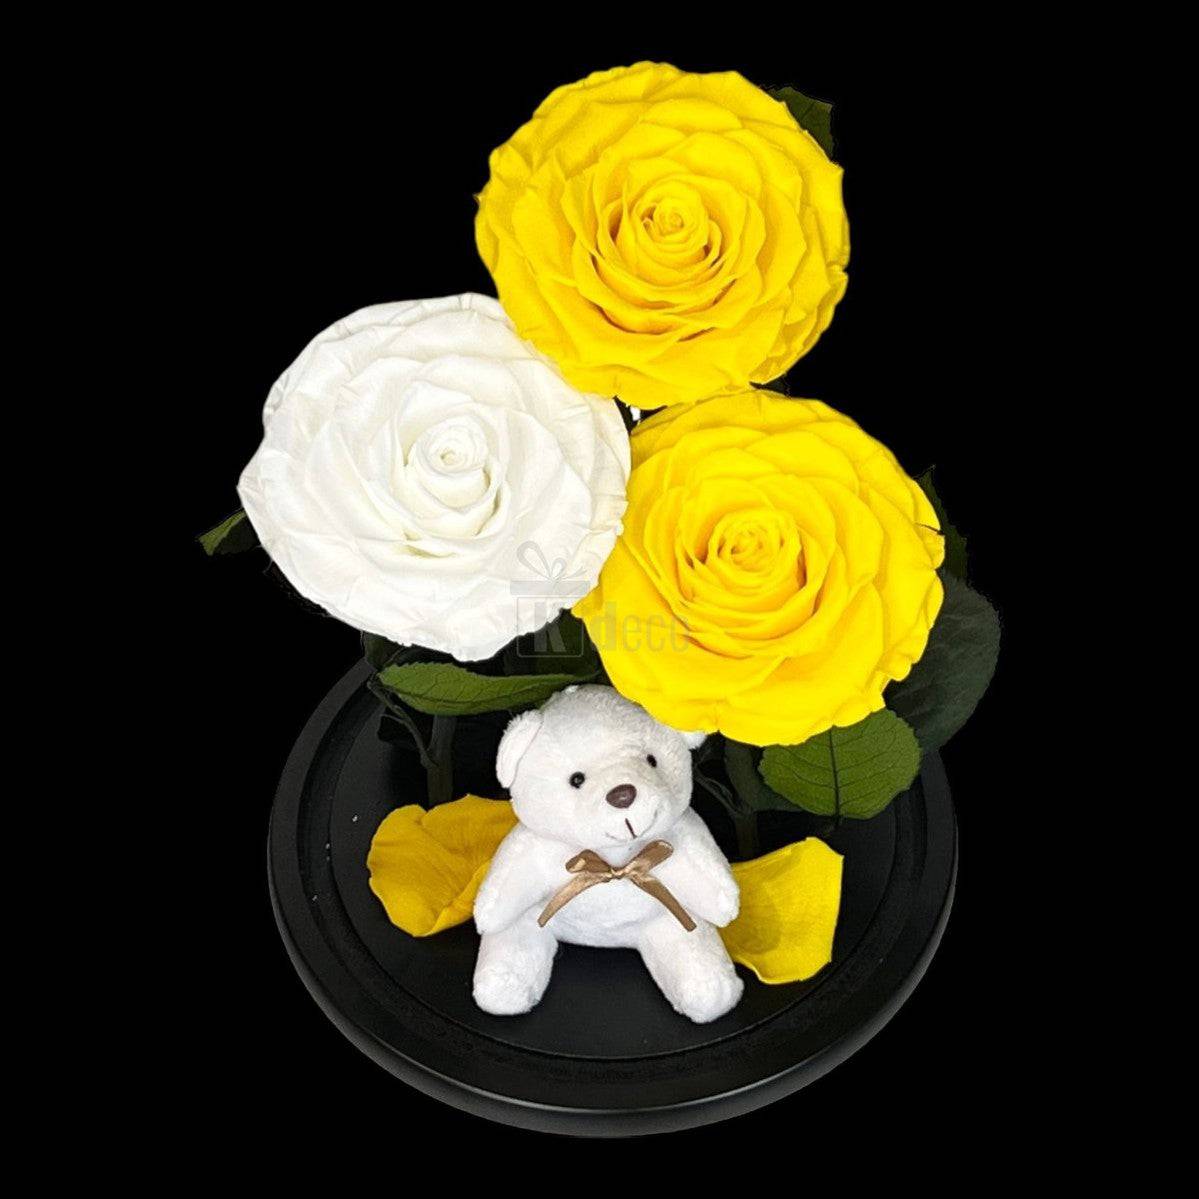 3 Trandafiri Criogenati mari (2 galbeni si 1 alb) in cupola sticla cu ursulet-Kdeco.ro